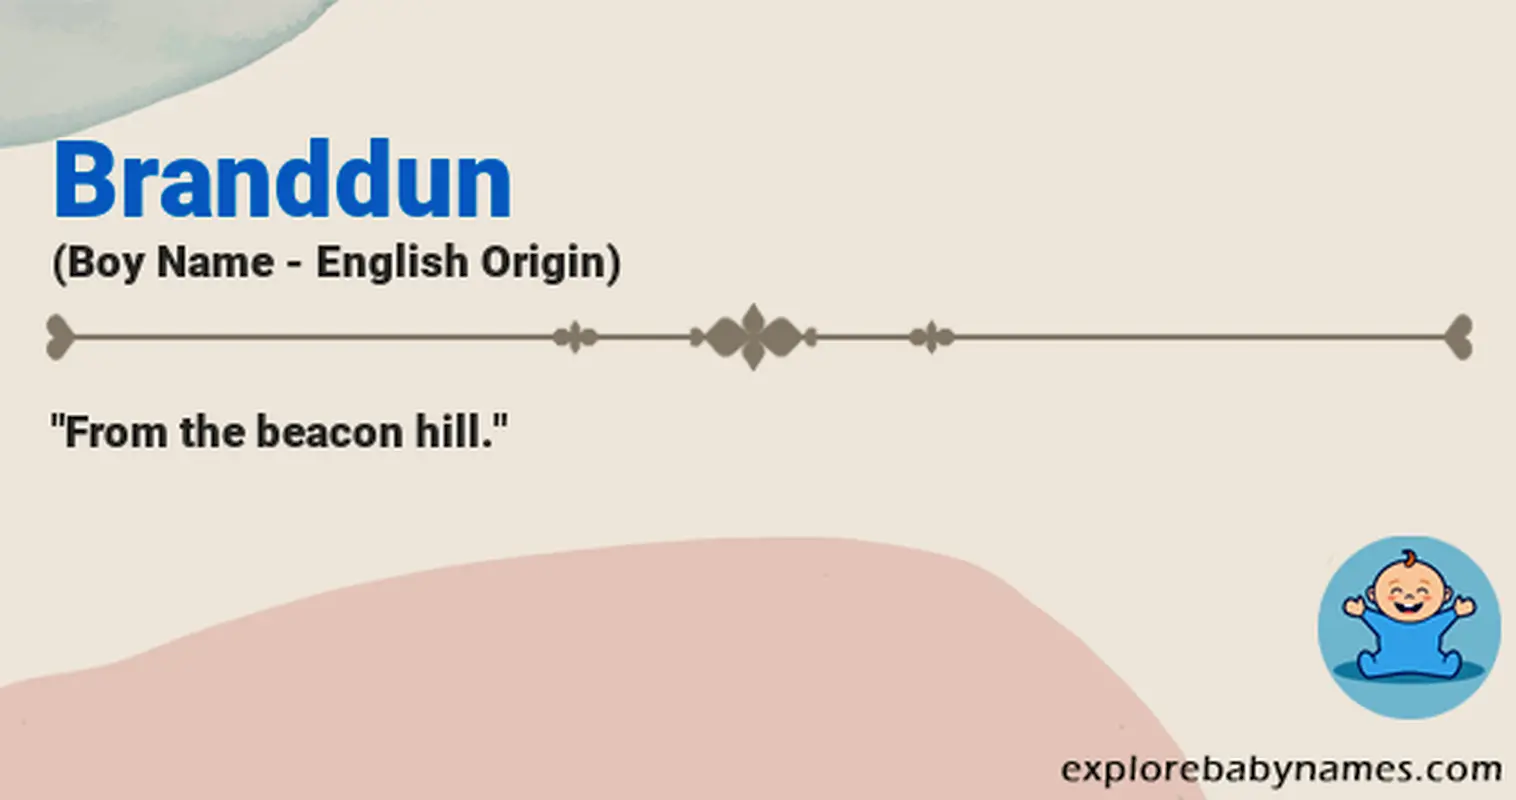 Meaning of Branddun